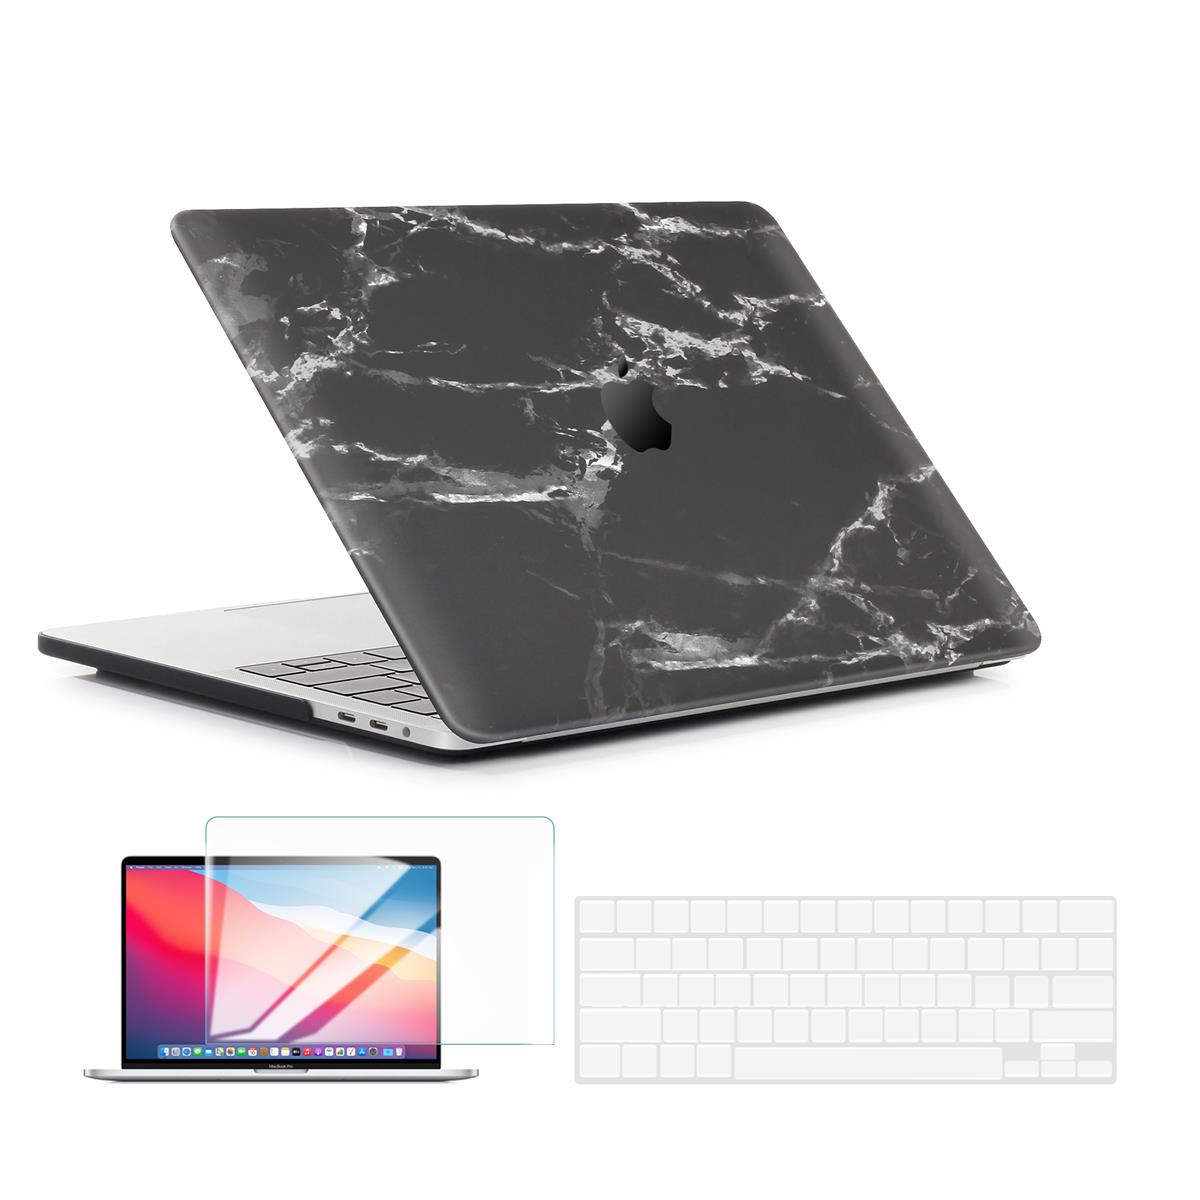 Жесткий чехол Techprotectus для Apple MacBook Air 13 дюймов, черный мрамор